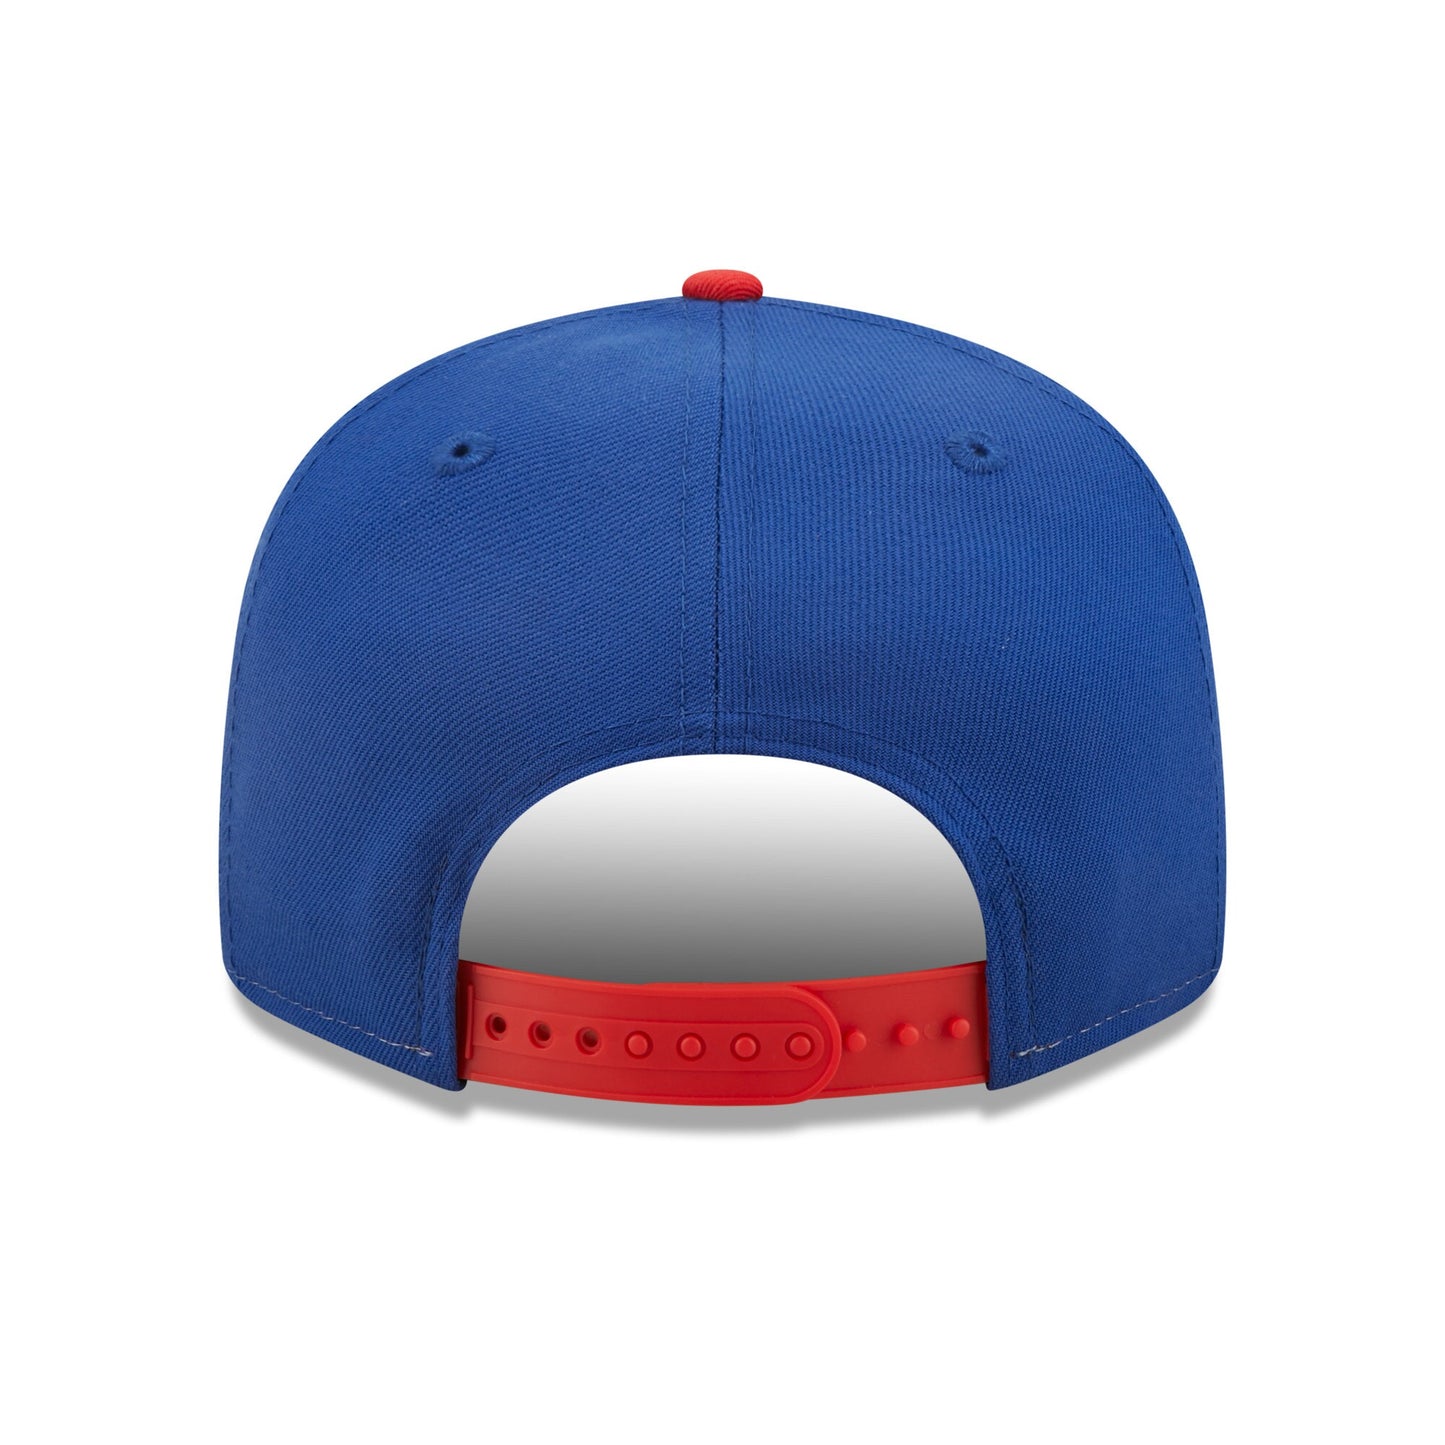 New England Patriots Historic Logo Retro Sport 3 Tone New Era 9FIFTY Snapback Hat